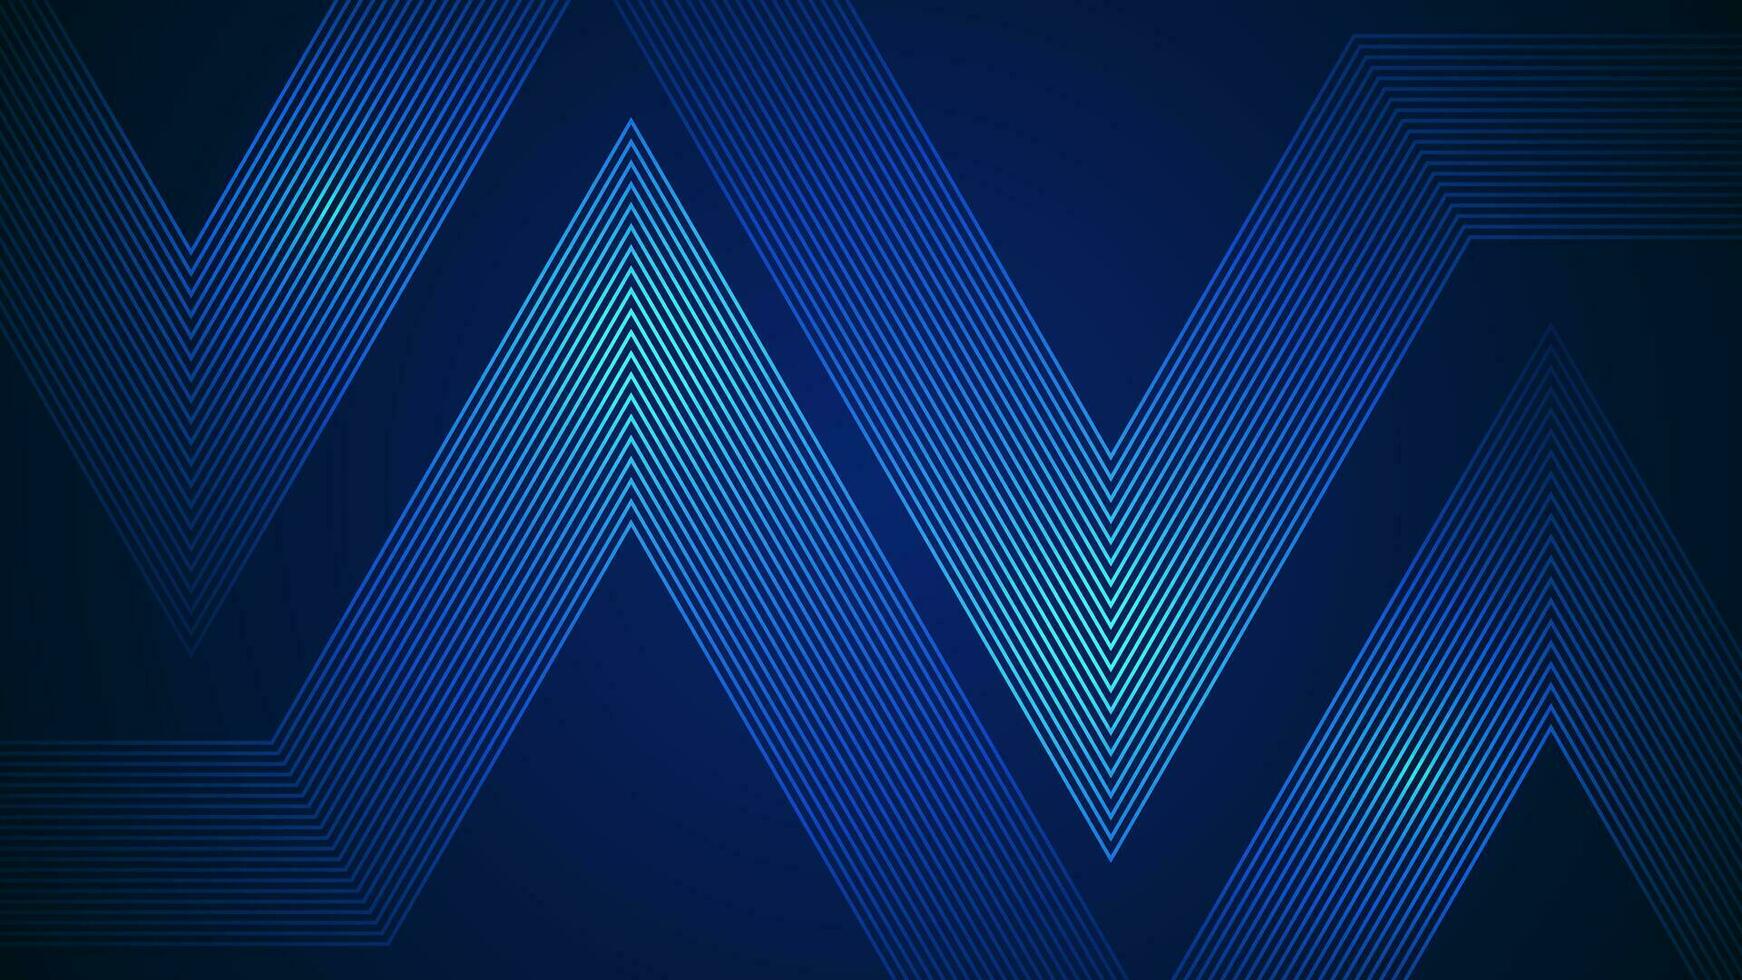 mörk blå enkel abstrakt bakgrund med rader i en geometrisk stil som de huvud element. vektor